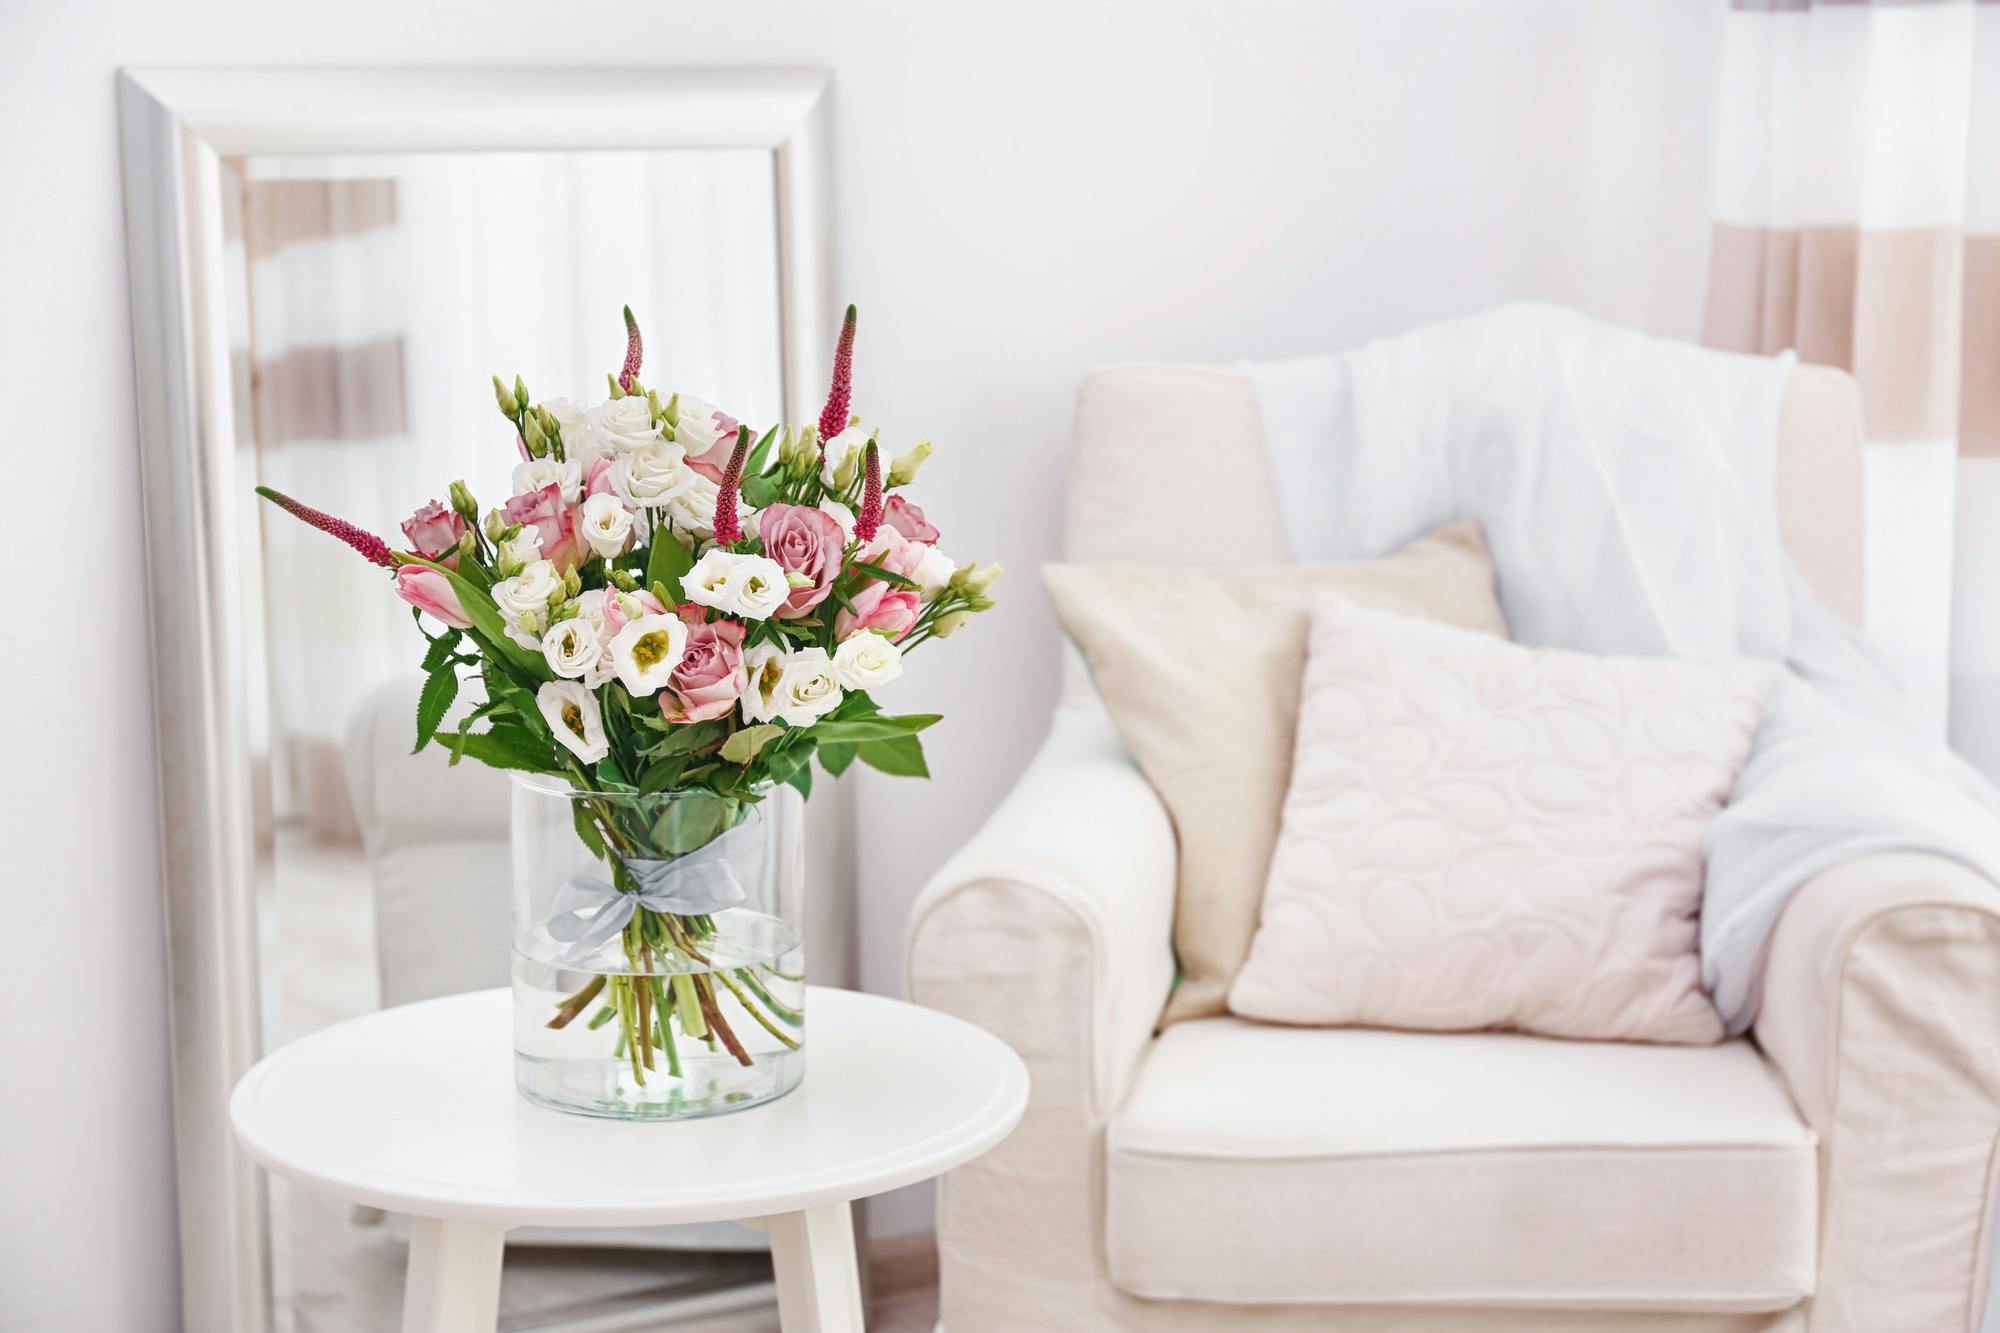 Bloemen online bestellen en aan huis laten leveren in heel België. Top 9 tips voor prachtige bloemen in huis deze zomer afbeelding 3